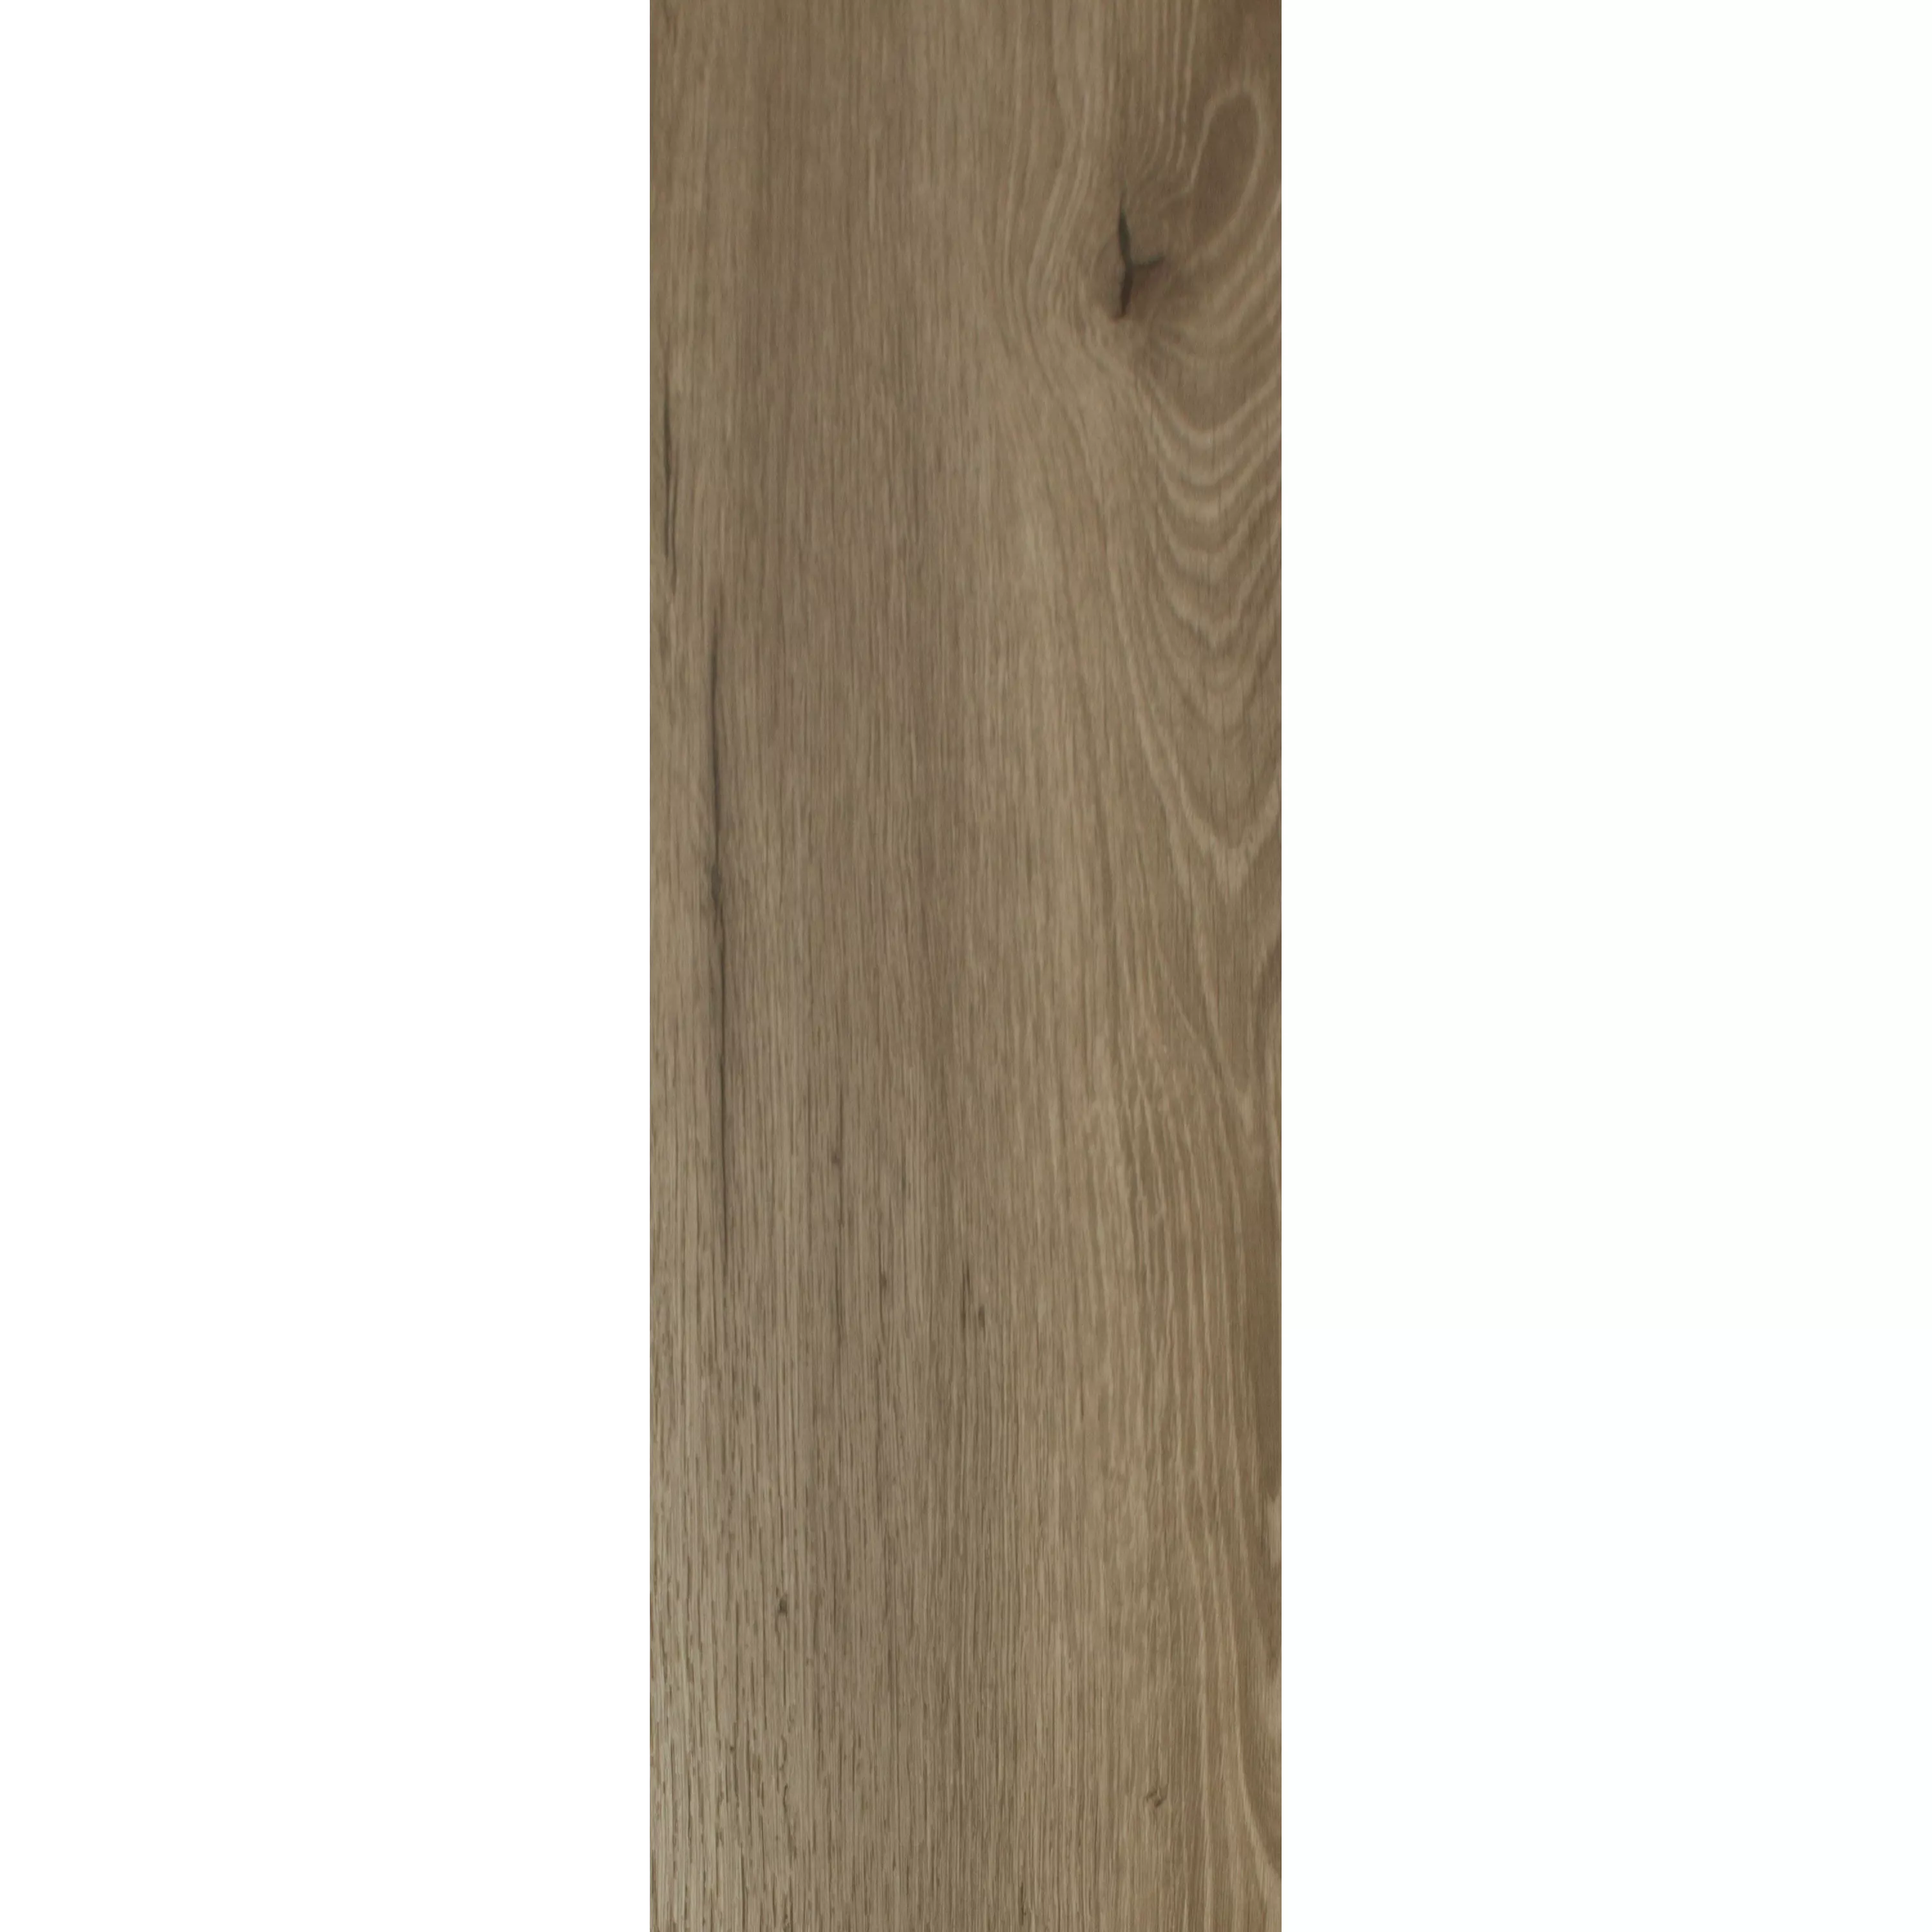 Vinylboden Klebevinyl Newcastle 23,2x122,7cm Beige